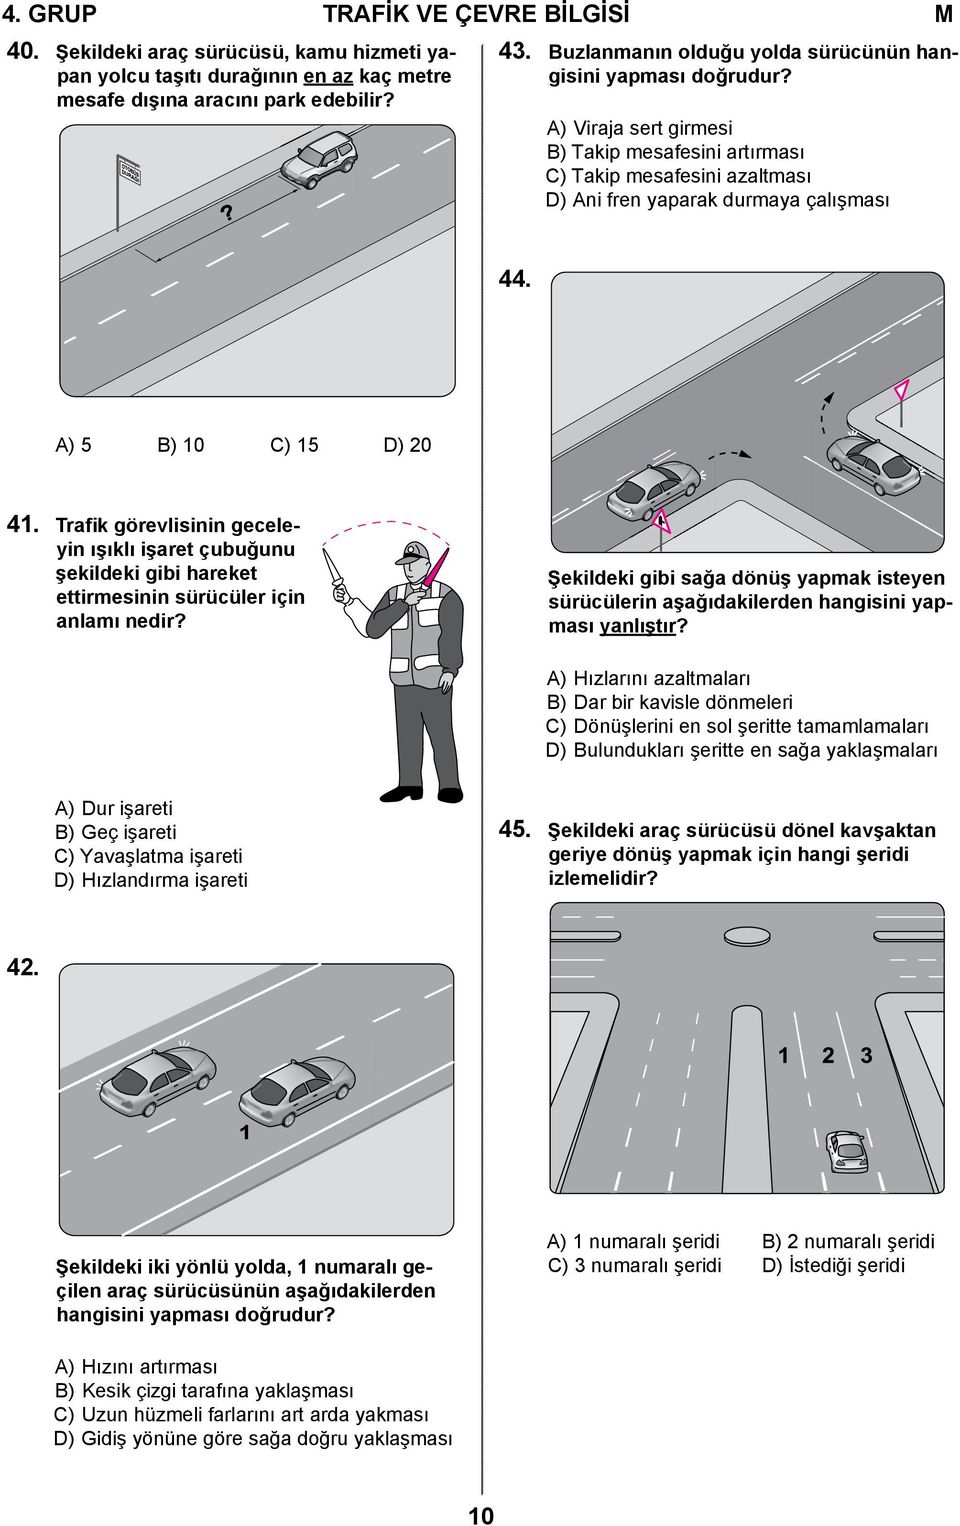 A) 5 B) 10 C) 15 D) 20 41. Trafik görevlisinin geceleyin ışıklı işaret çubuğunu şekildeki gibi hareket ettirmesinin sürücüler için anlamı nedir?